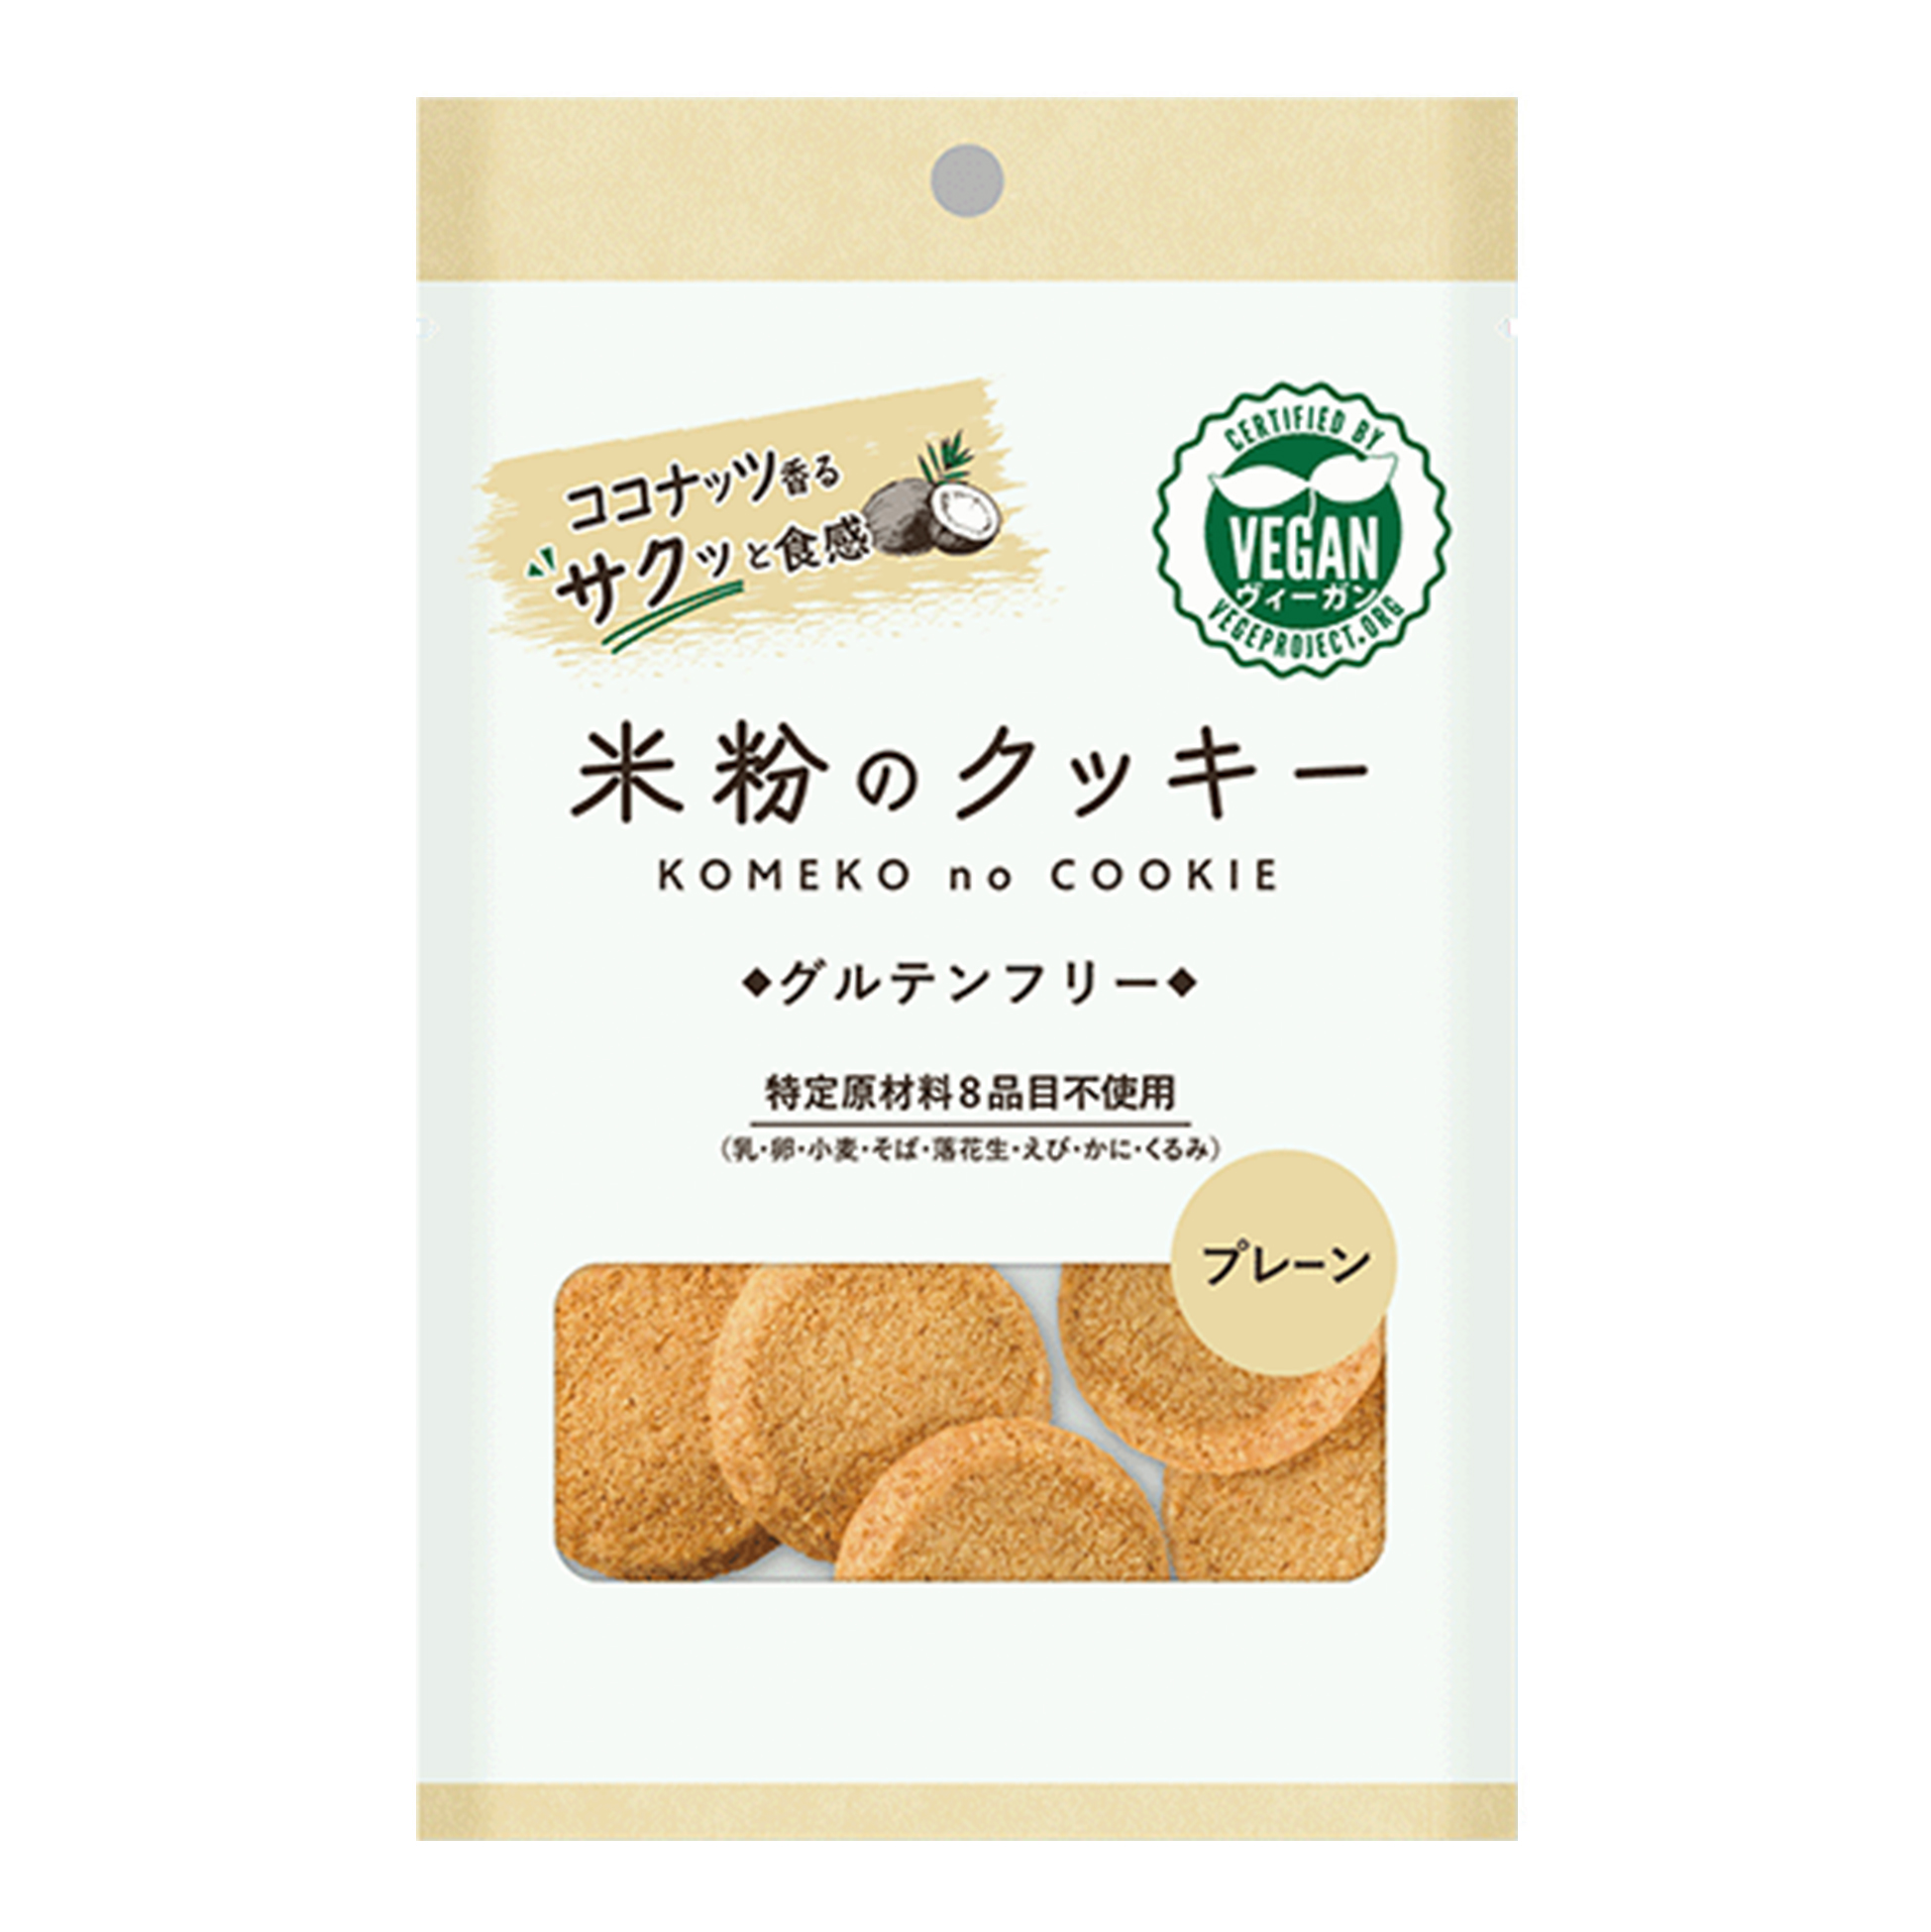 Rice Flour Cookies plain flavor